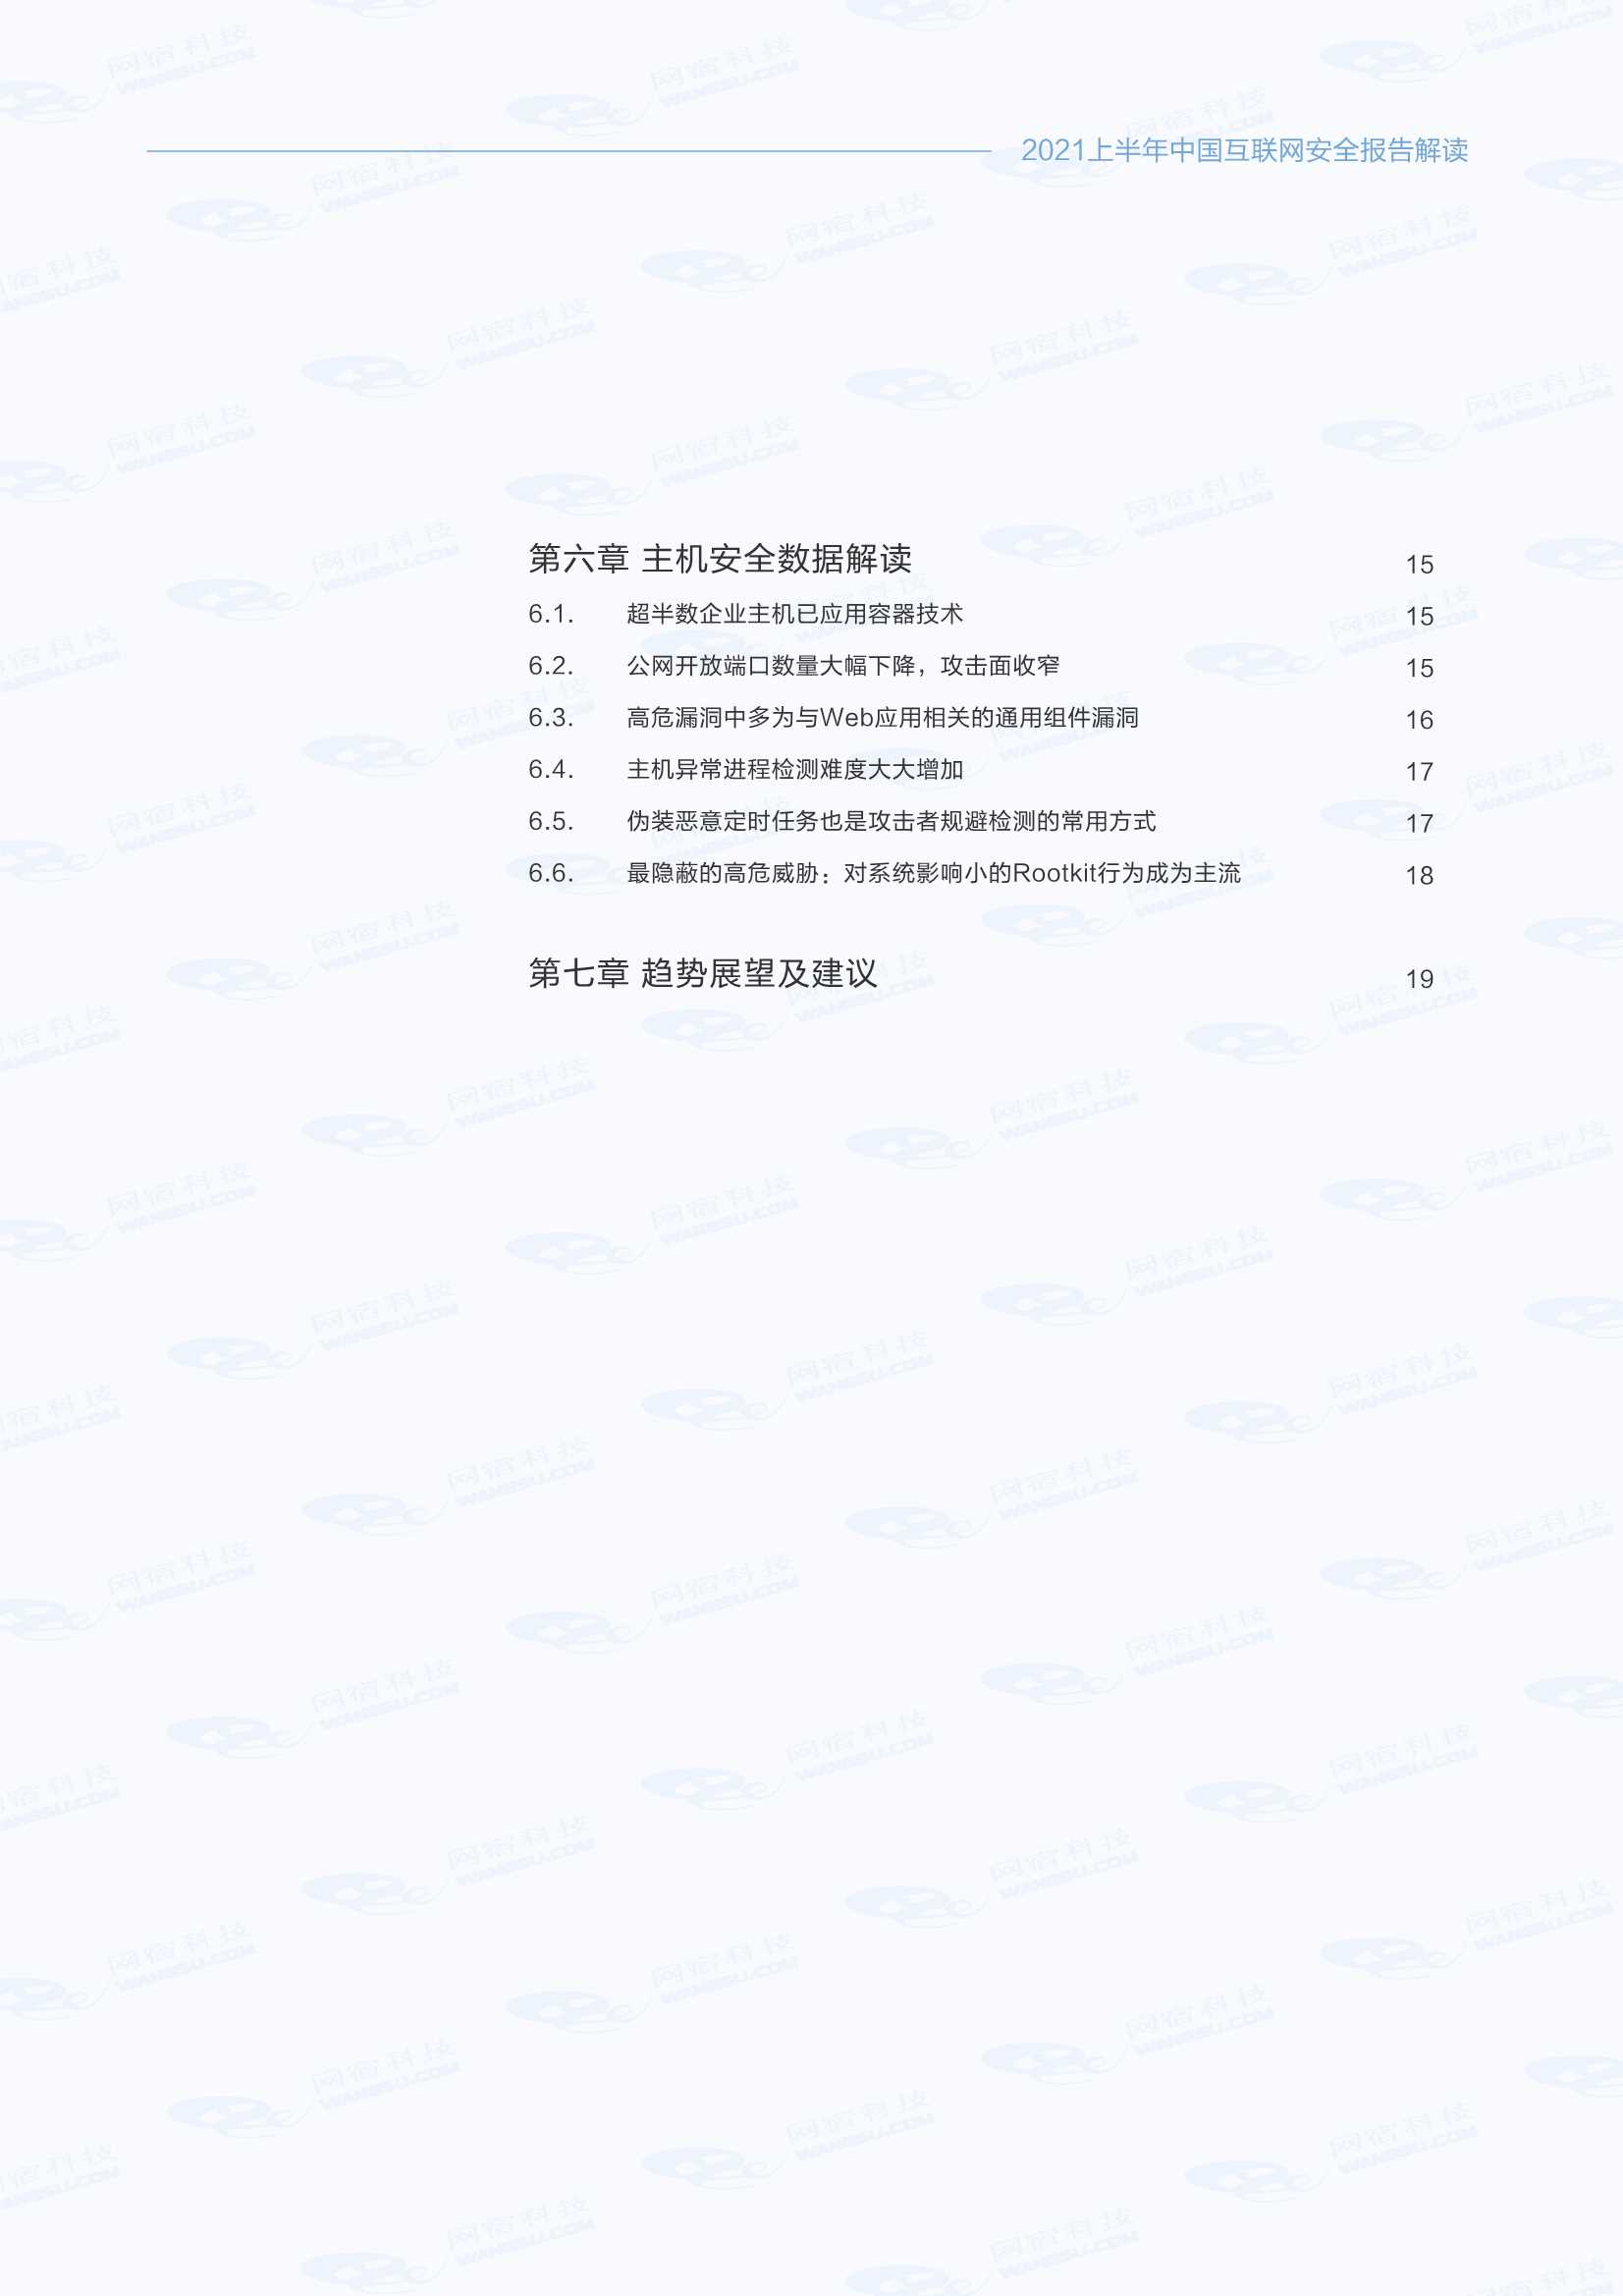 网宿科技-中国互联网安全报告（2021年上半年）-2021.11-25页